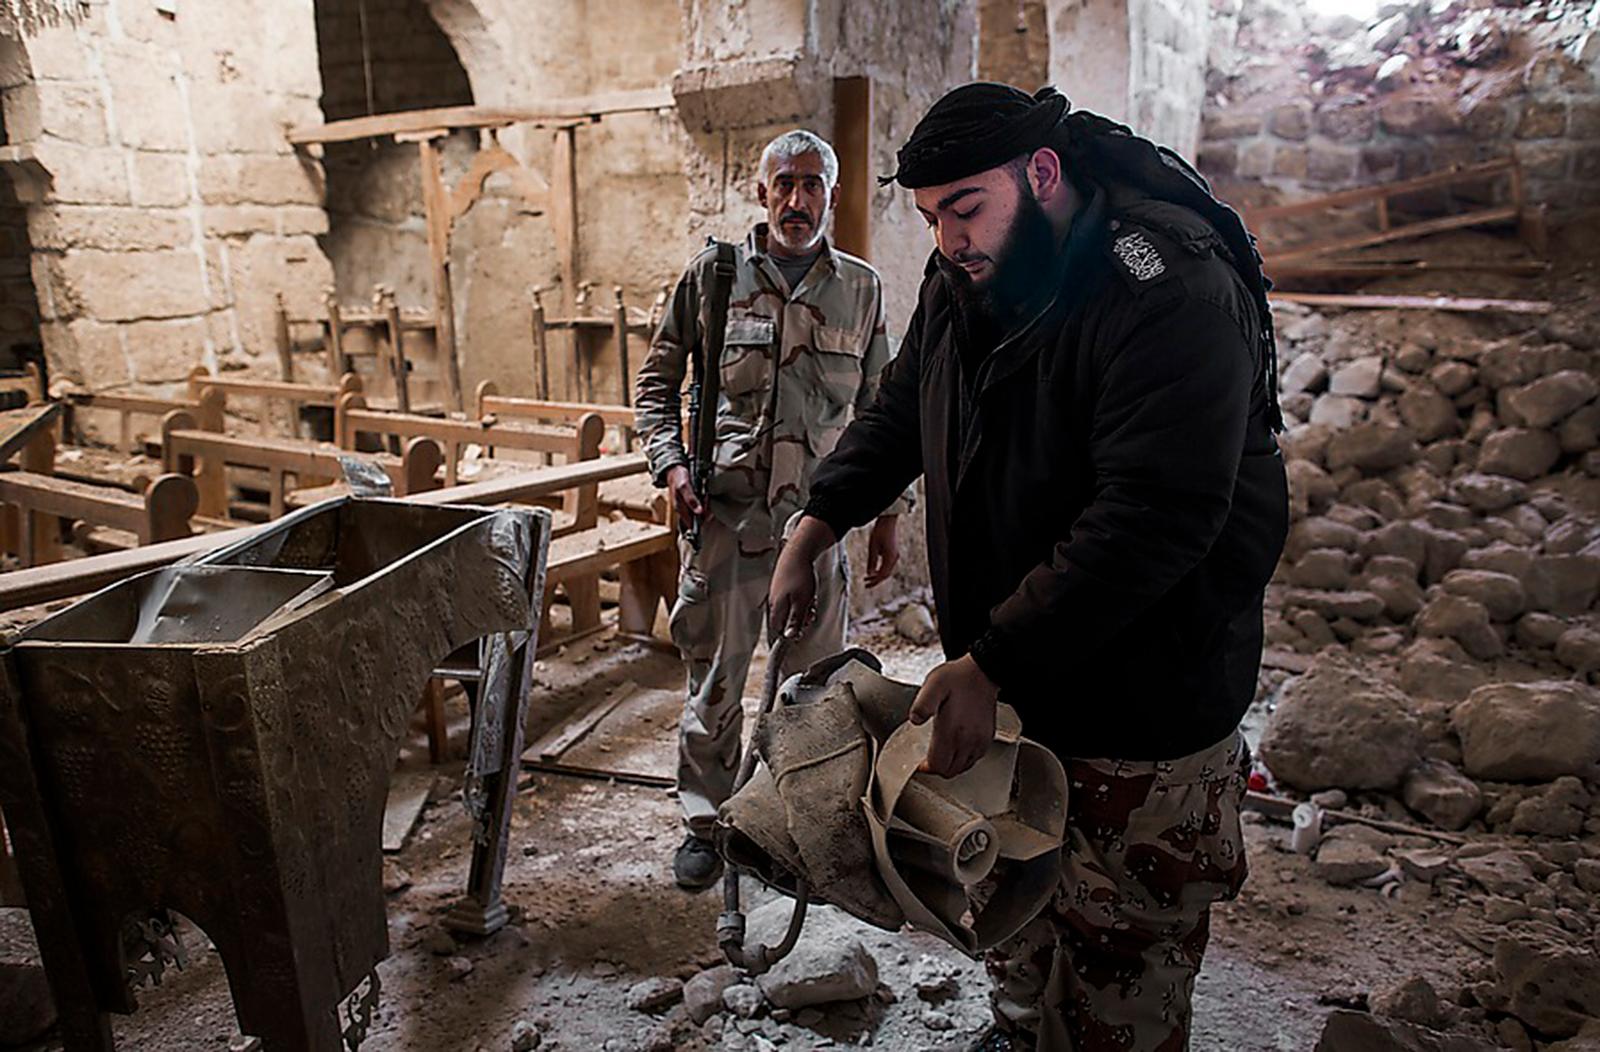 En gång hade Maaloula en vacker kyrka. FSA-krigaren Yessef visar upp en av bomberna som förstörde den. Al Aumda, 45, är stadens borgmästare och ledare för FSA-gruppen: ”Jag är så less på det här kriget”, säger han.